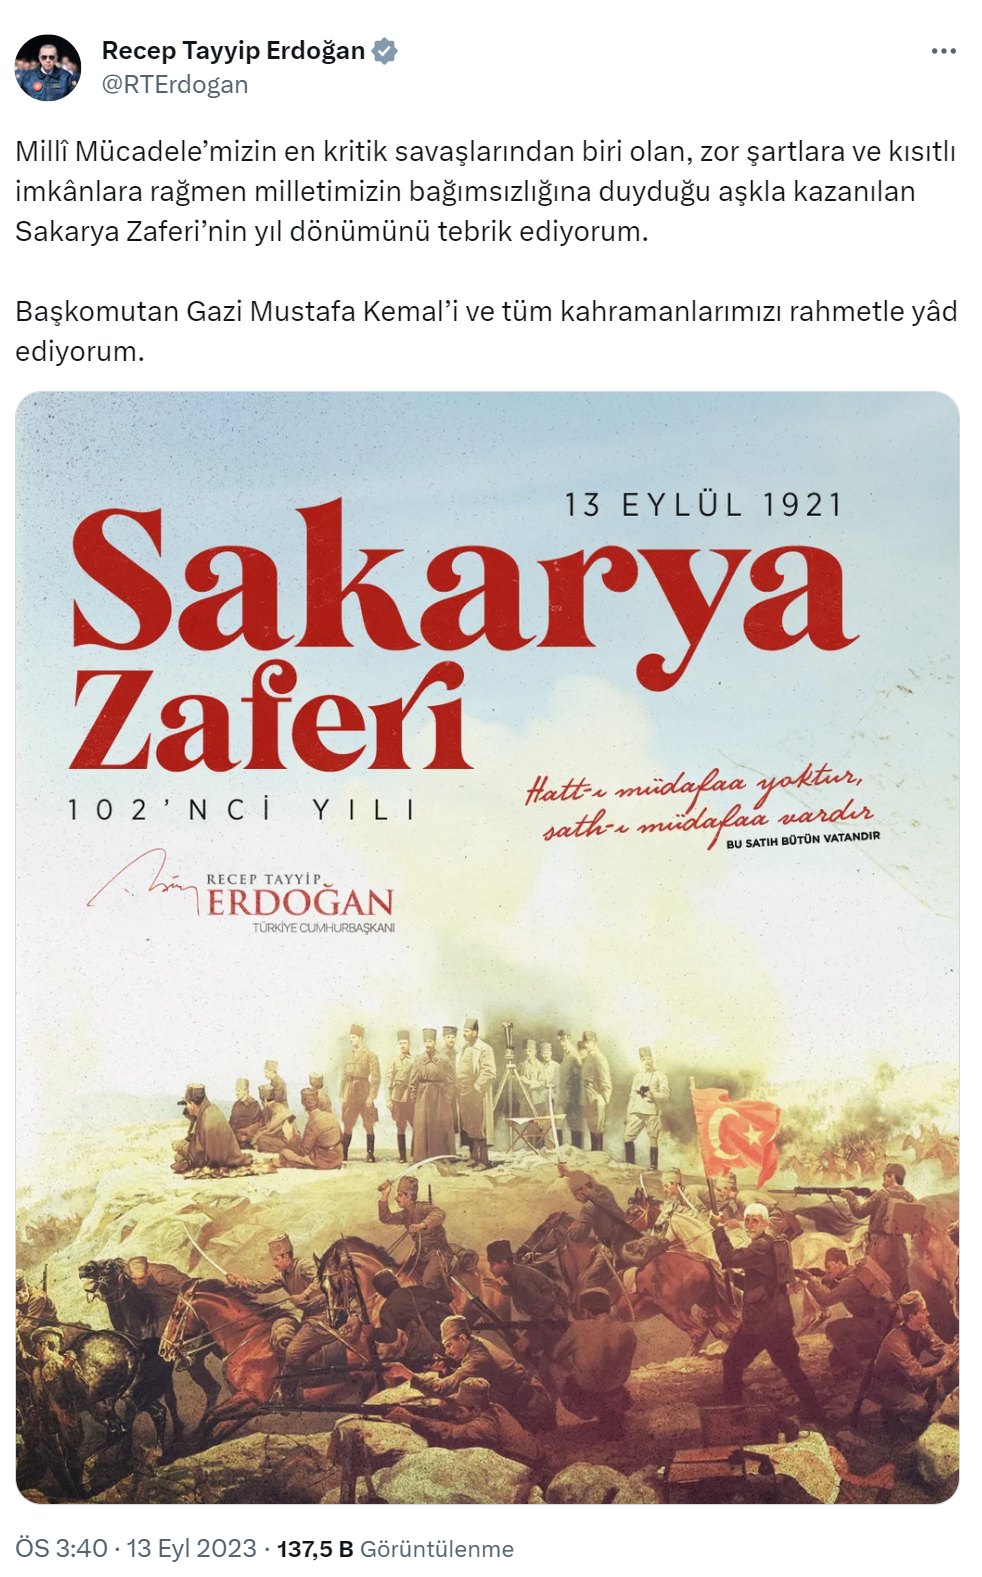 Cumhurbaşkanı Erdoğan’dan Sakarya Meydan Muharebesi’nin 102. yıl dönümü mesajı